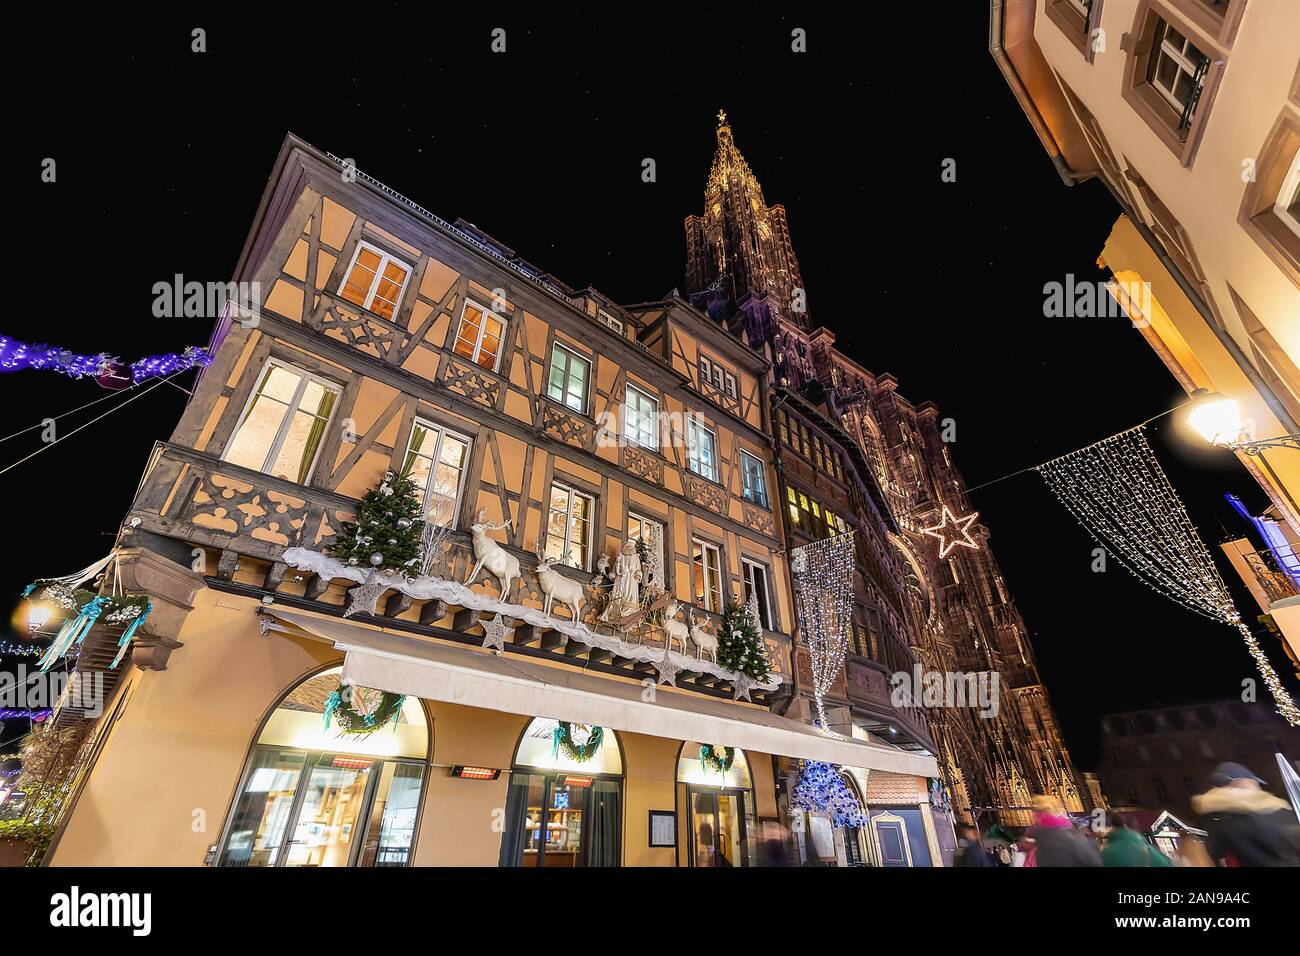 Bâtiment à colombages décorée pour Noël près de Strasbourg, France Banque D'Images